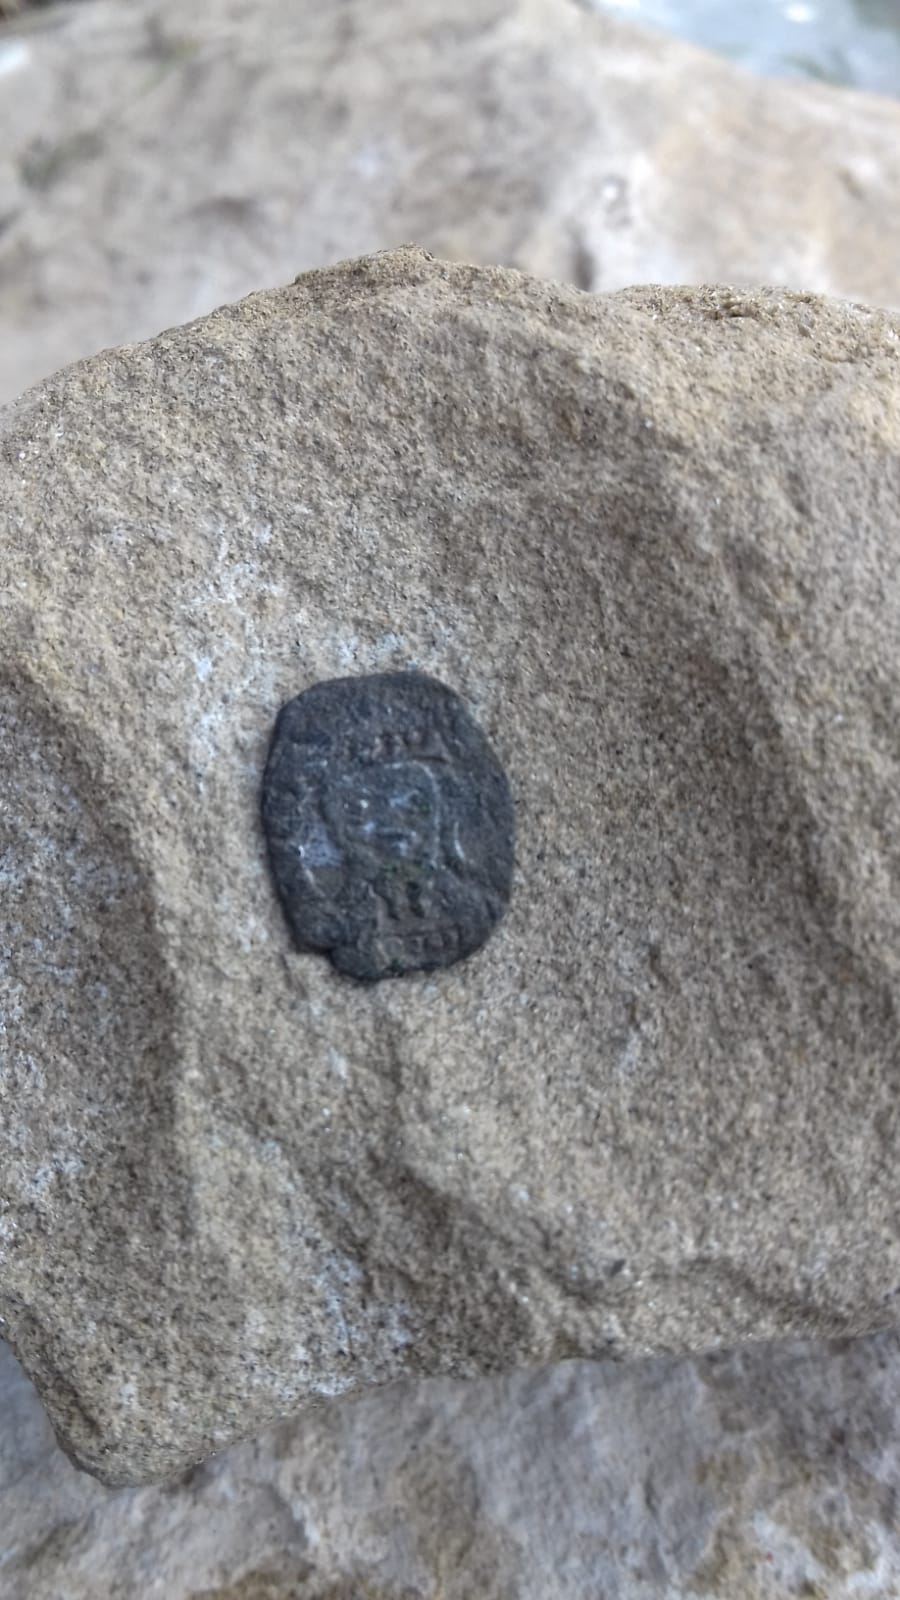 Ritrovamento eccezionale negli scavi archeologici di Toano: una moneta con l’effige del Volto Santo conferma la profondità storica di questo cammino